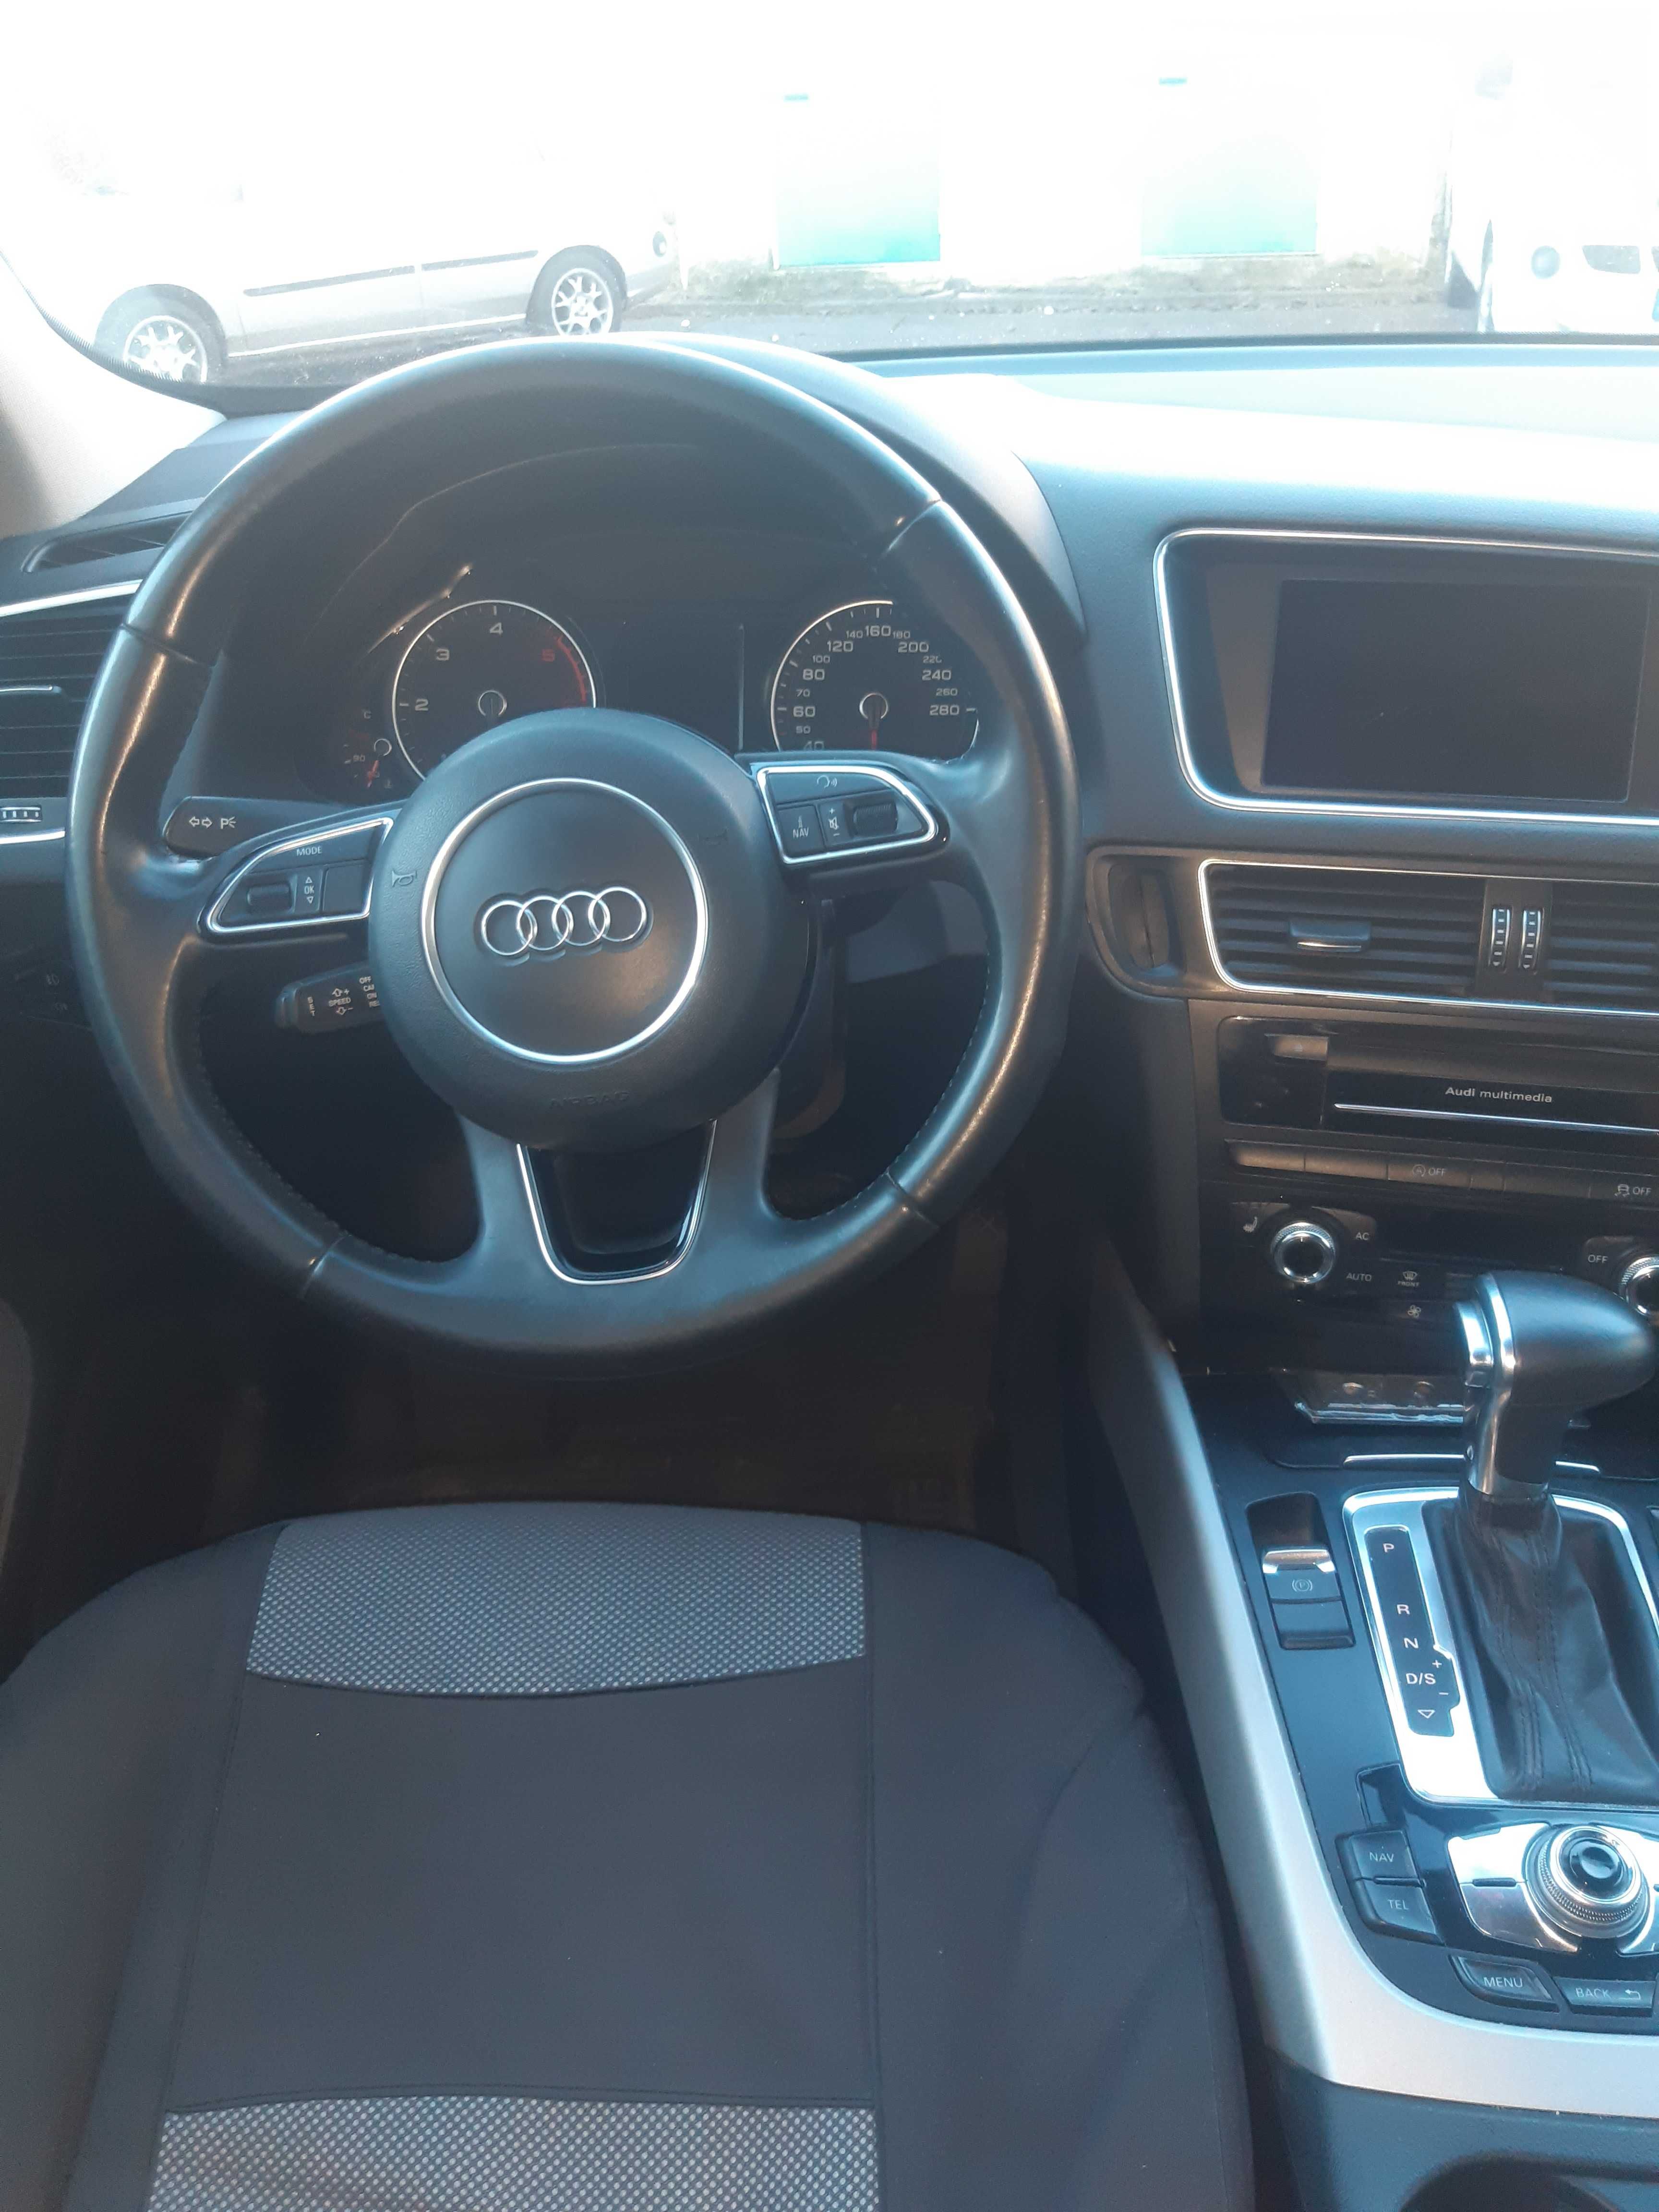 Audi Q5, 2.0 TDI, 2012 року